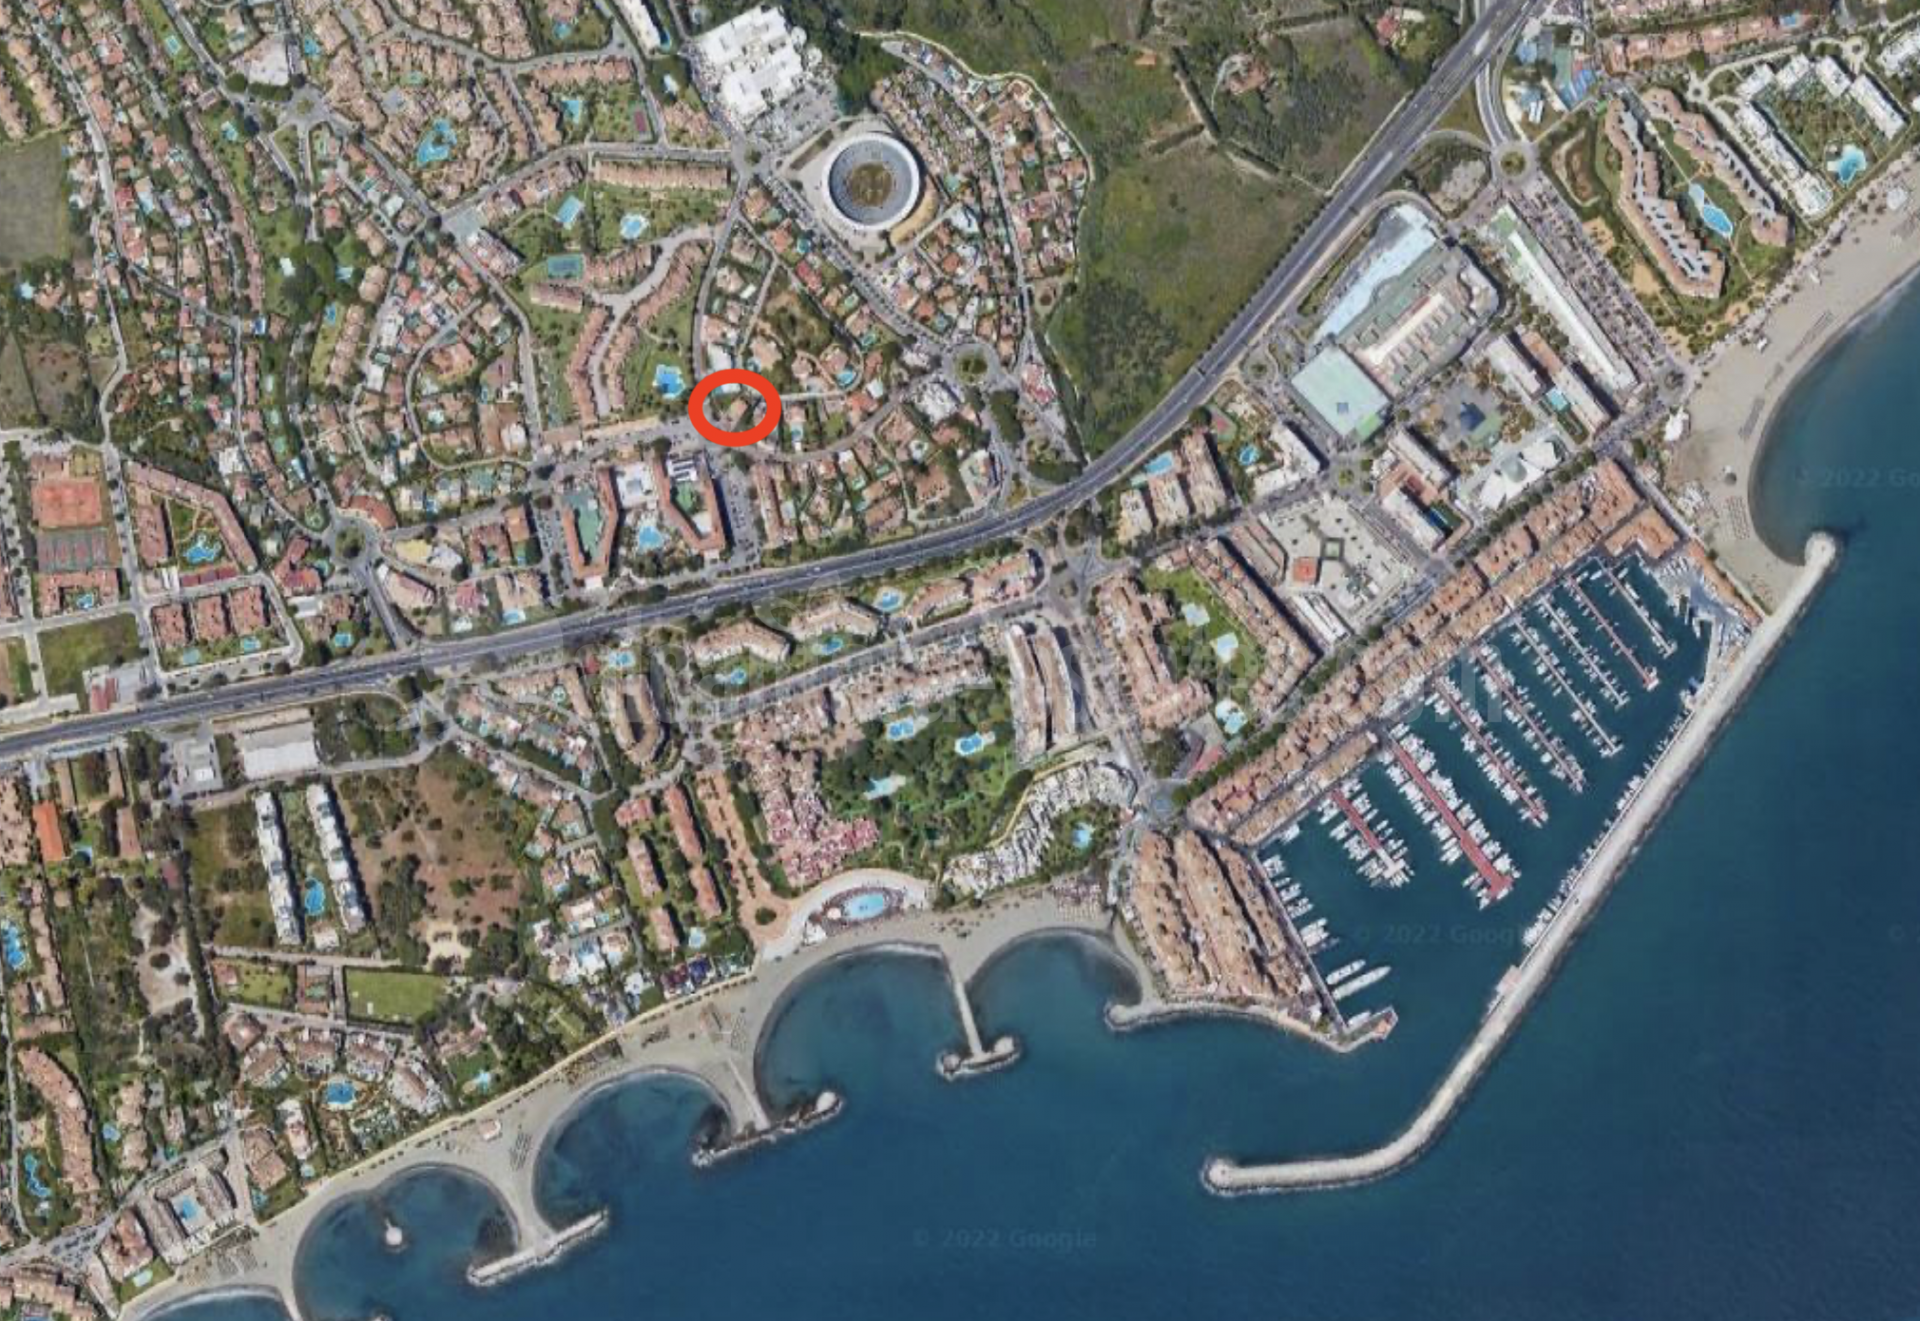 Plot in Marbella - Puerto Banus, Marbella